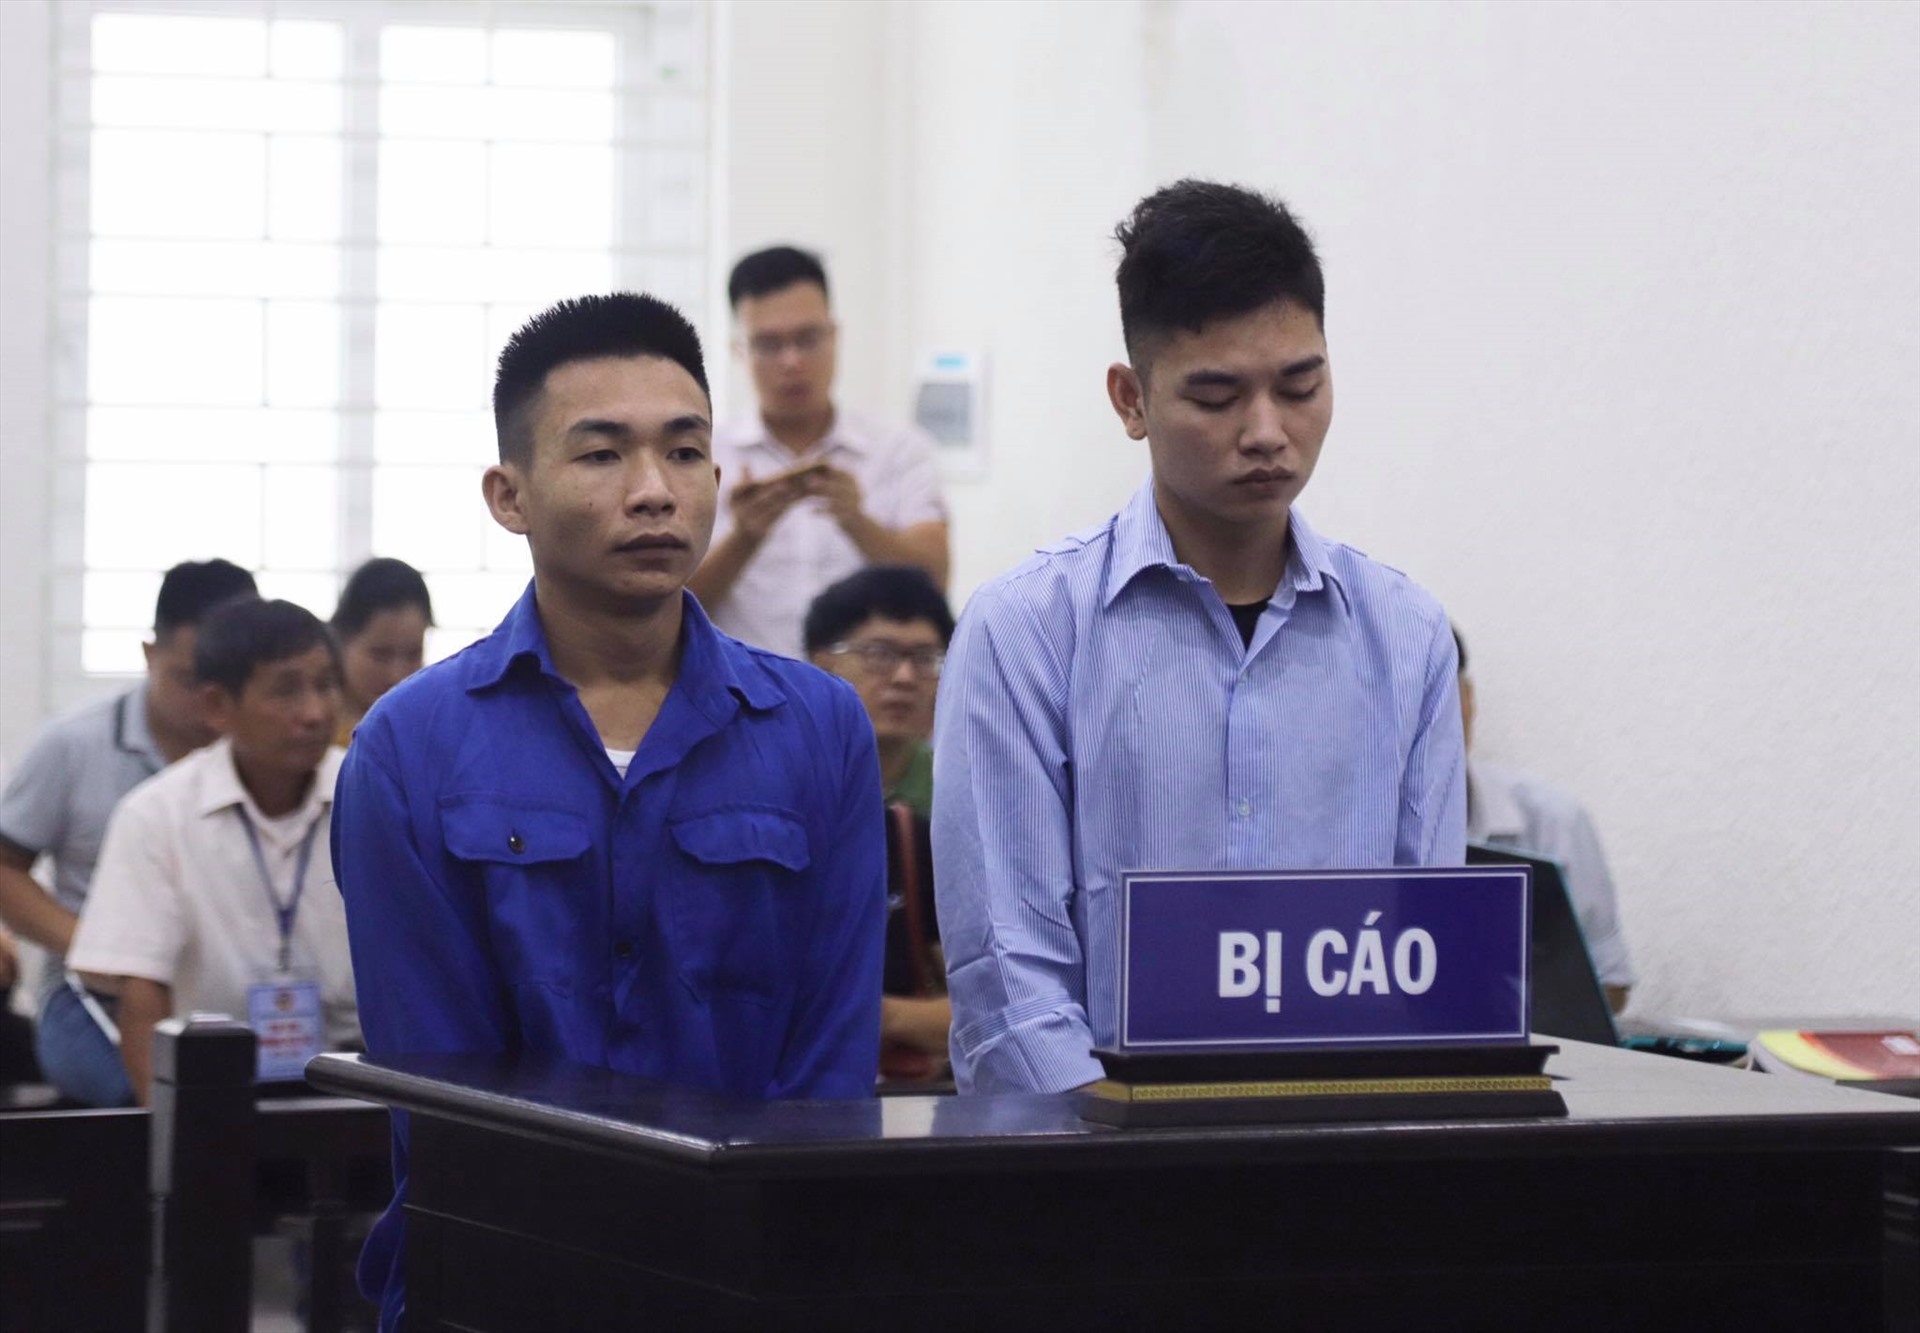 Đinh Văn Giáp (trái) cùng với Đinh Văn Trường đã thuê Nguyễn Cao S. chở đến khu vực vắng rồi ra tay sát hại nạn nhân, cướp chiếc xe máy. Ảnh: V.D.